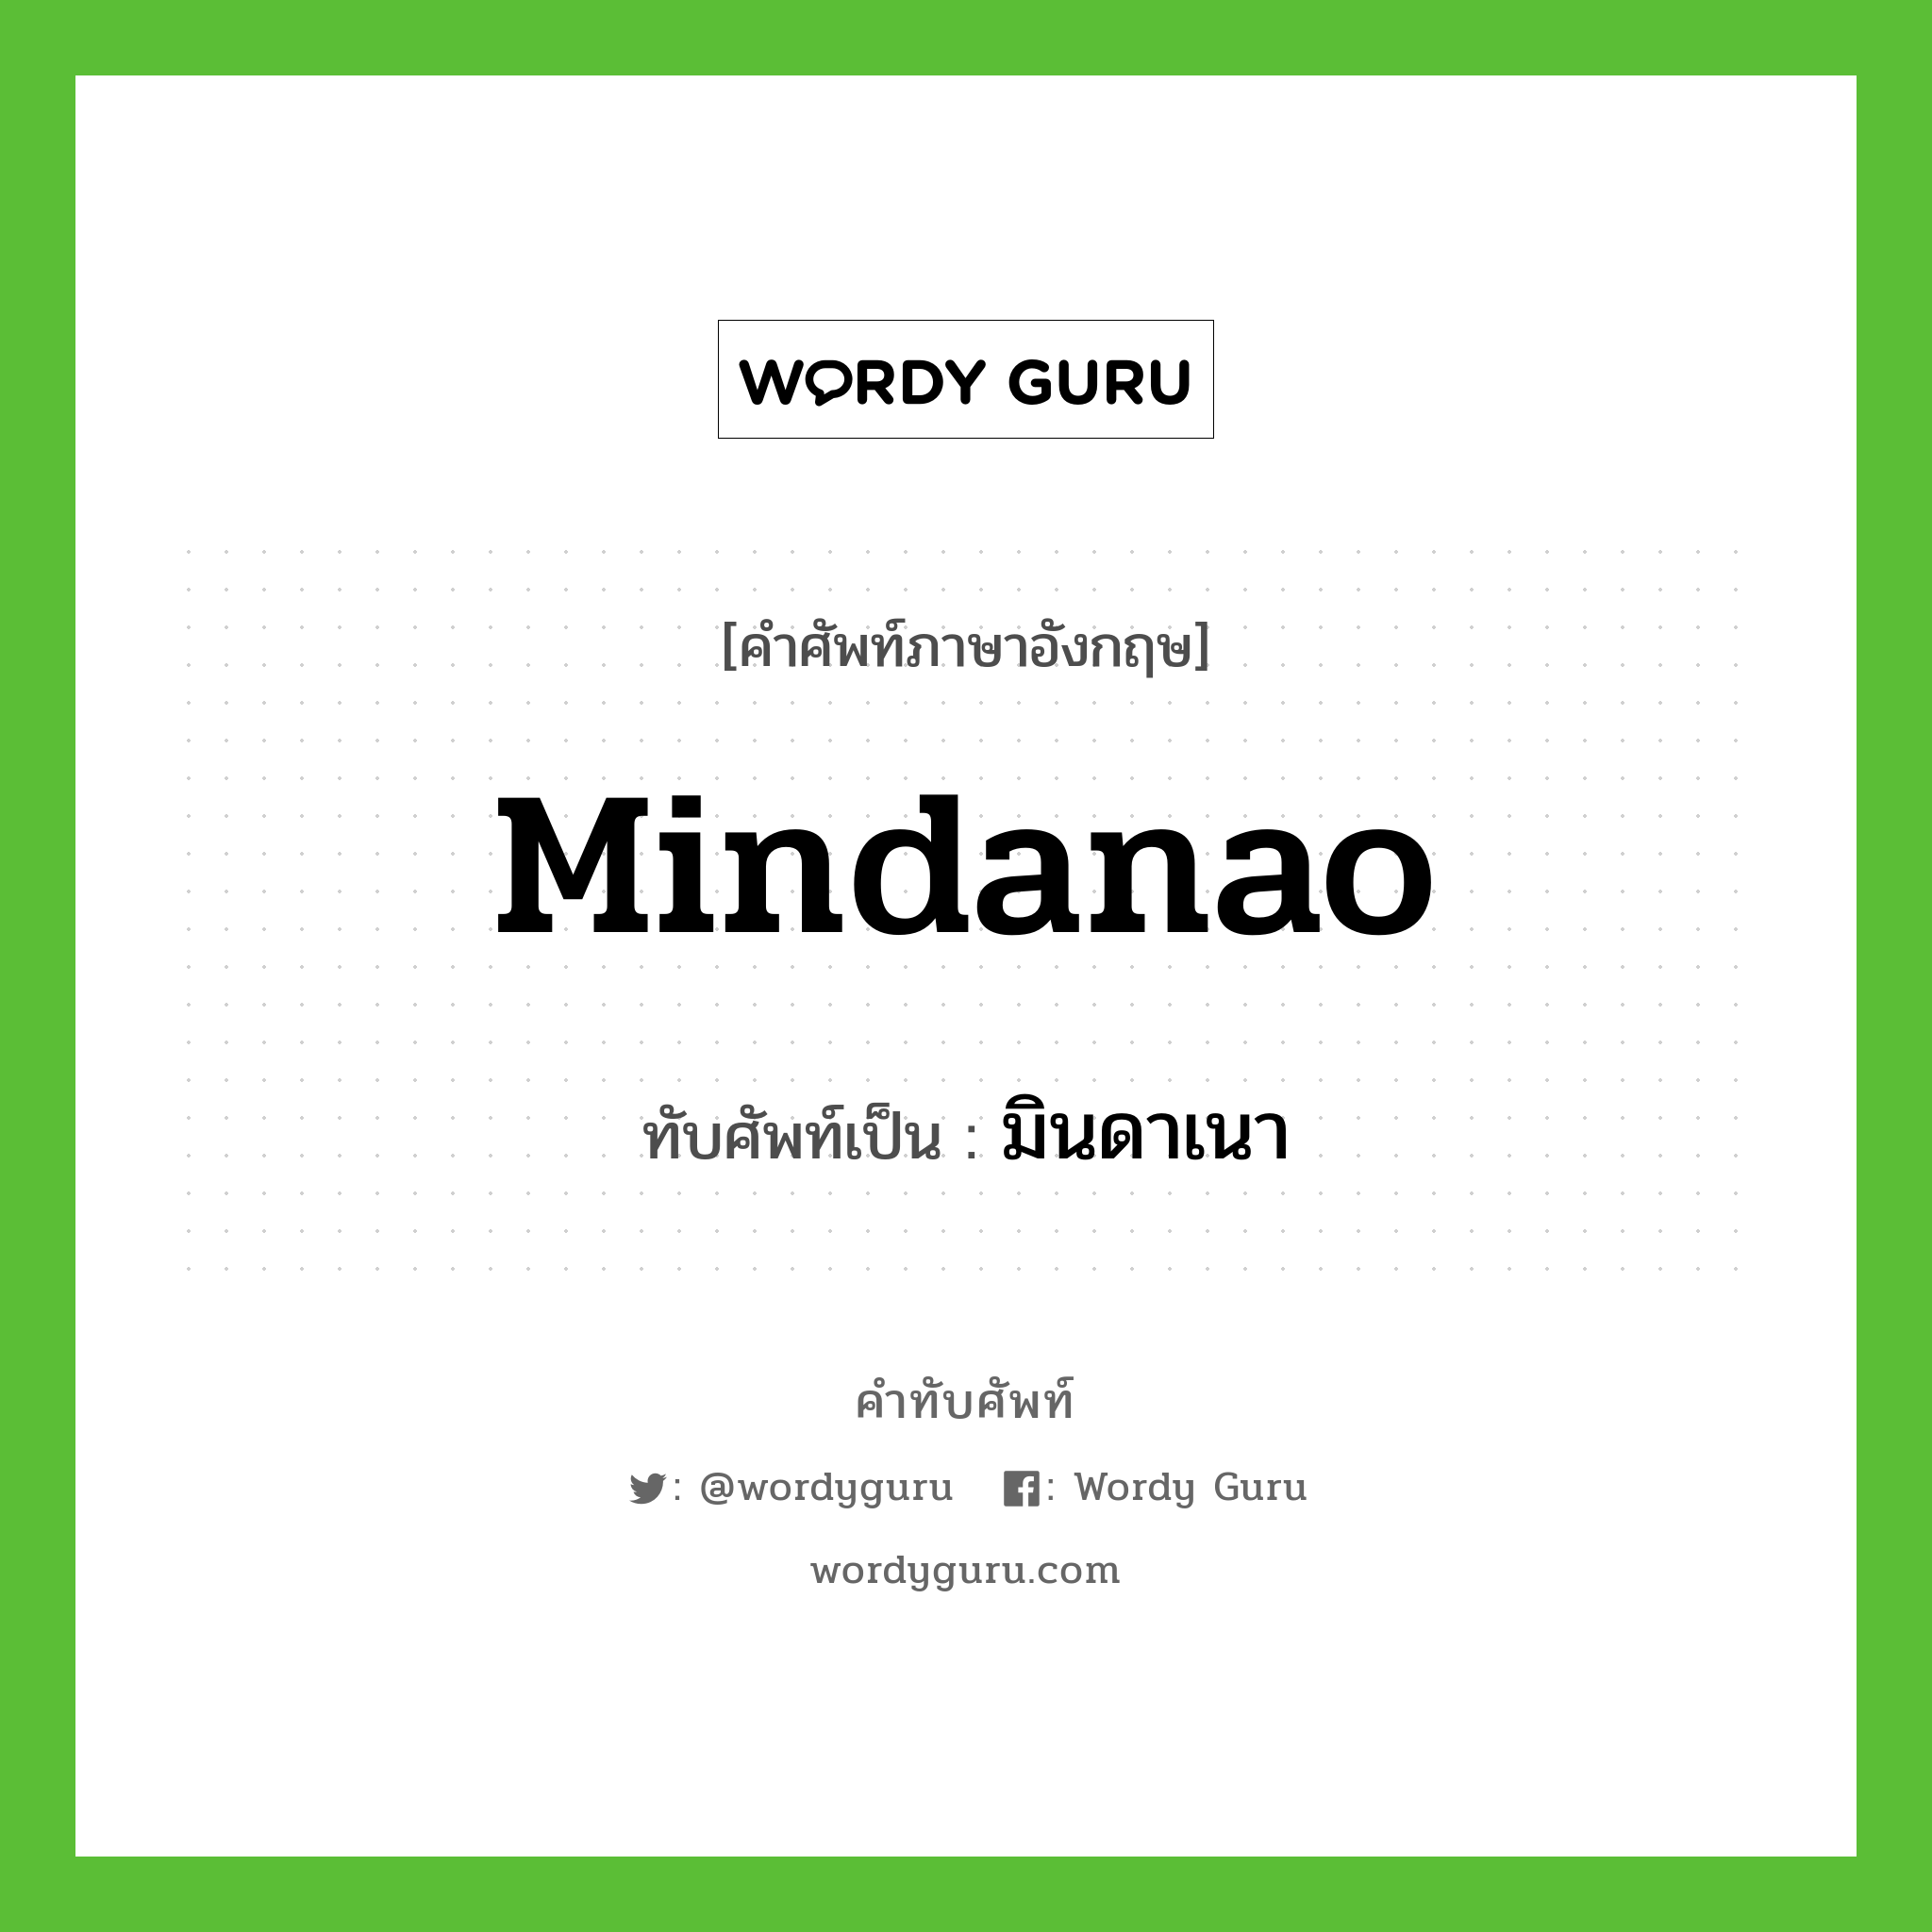 มินดาเนา เขียนอย่างไร?, คำศัพท์ภาษาอังกฤษ มินดาเนา ทับศัพท์เป็น Mindanao